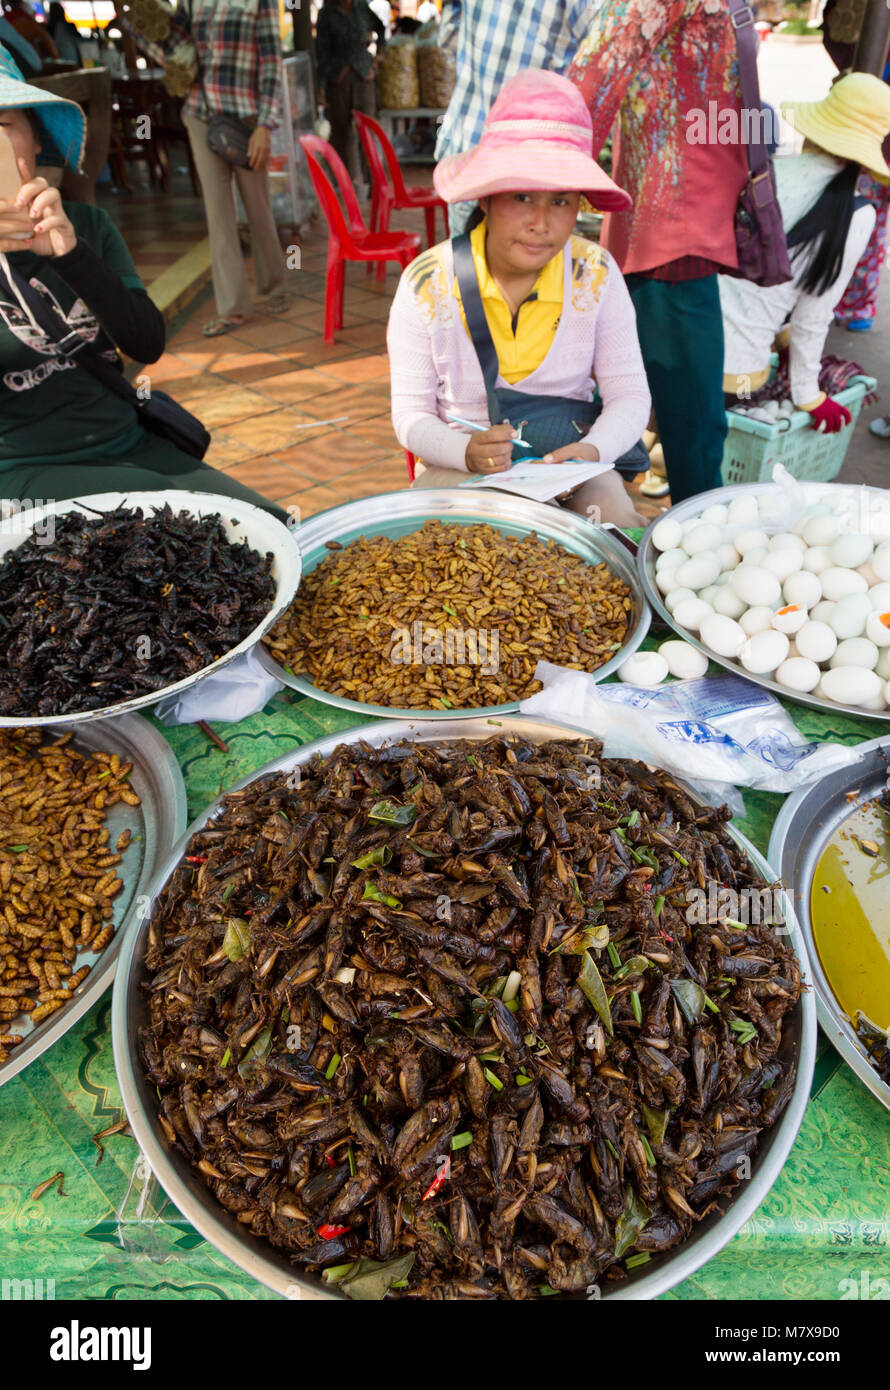 In Cambogia il mercato di insetti - insetti fritti in vendita presso un cibo stallo, Skoun, Cambogia, Asia Foto Stock